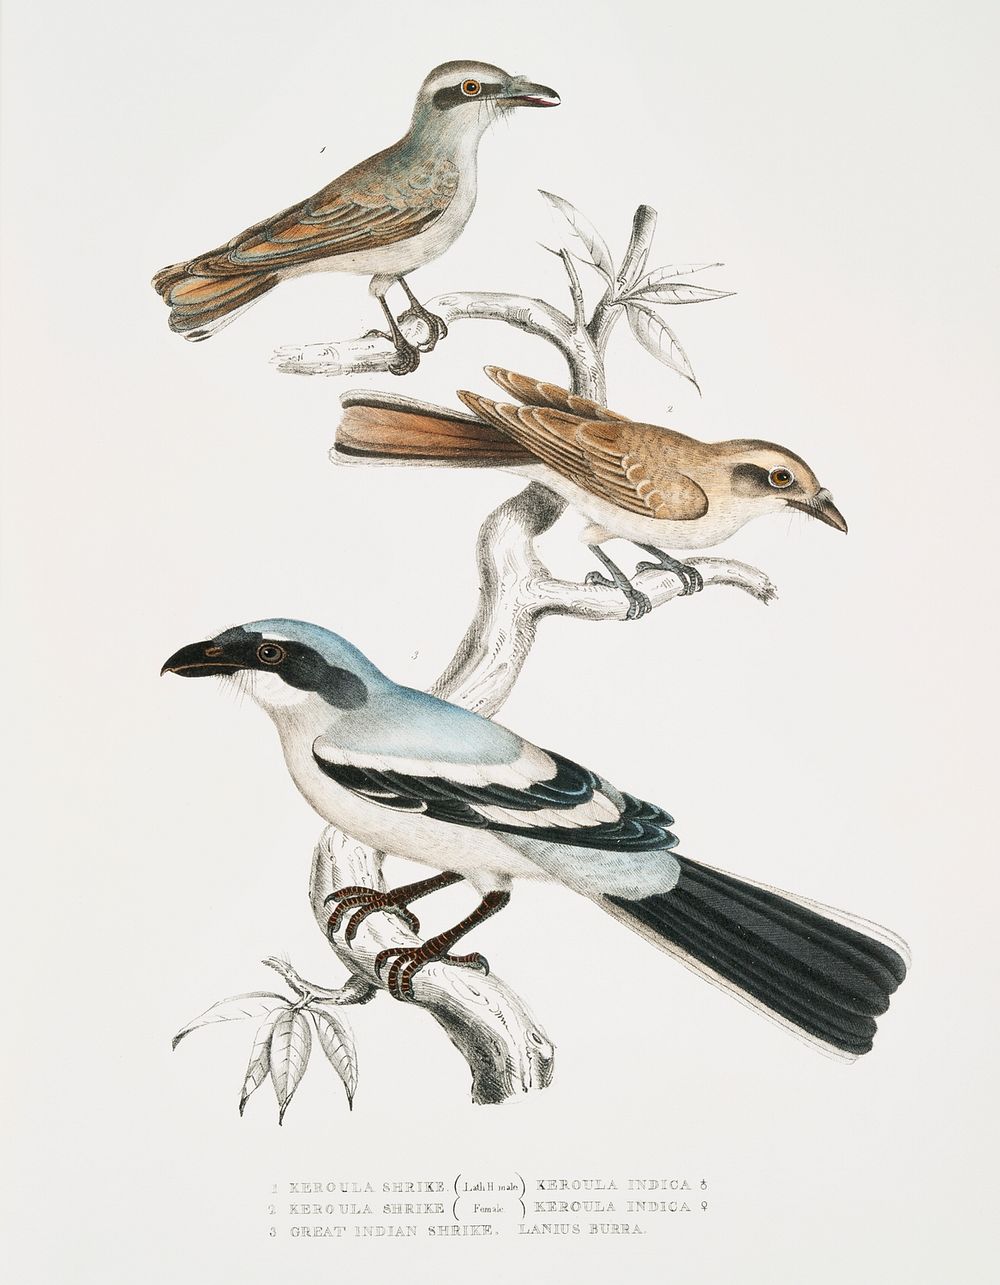 1, 2. Keroula Shrike, Male and Female (Keroula Indica) 3. Great Indian Shrike (Lanius Burra) from Illustrations of Indian…